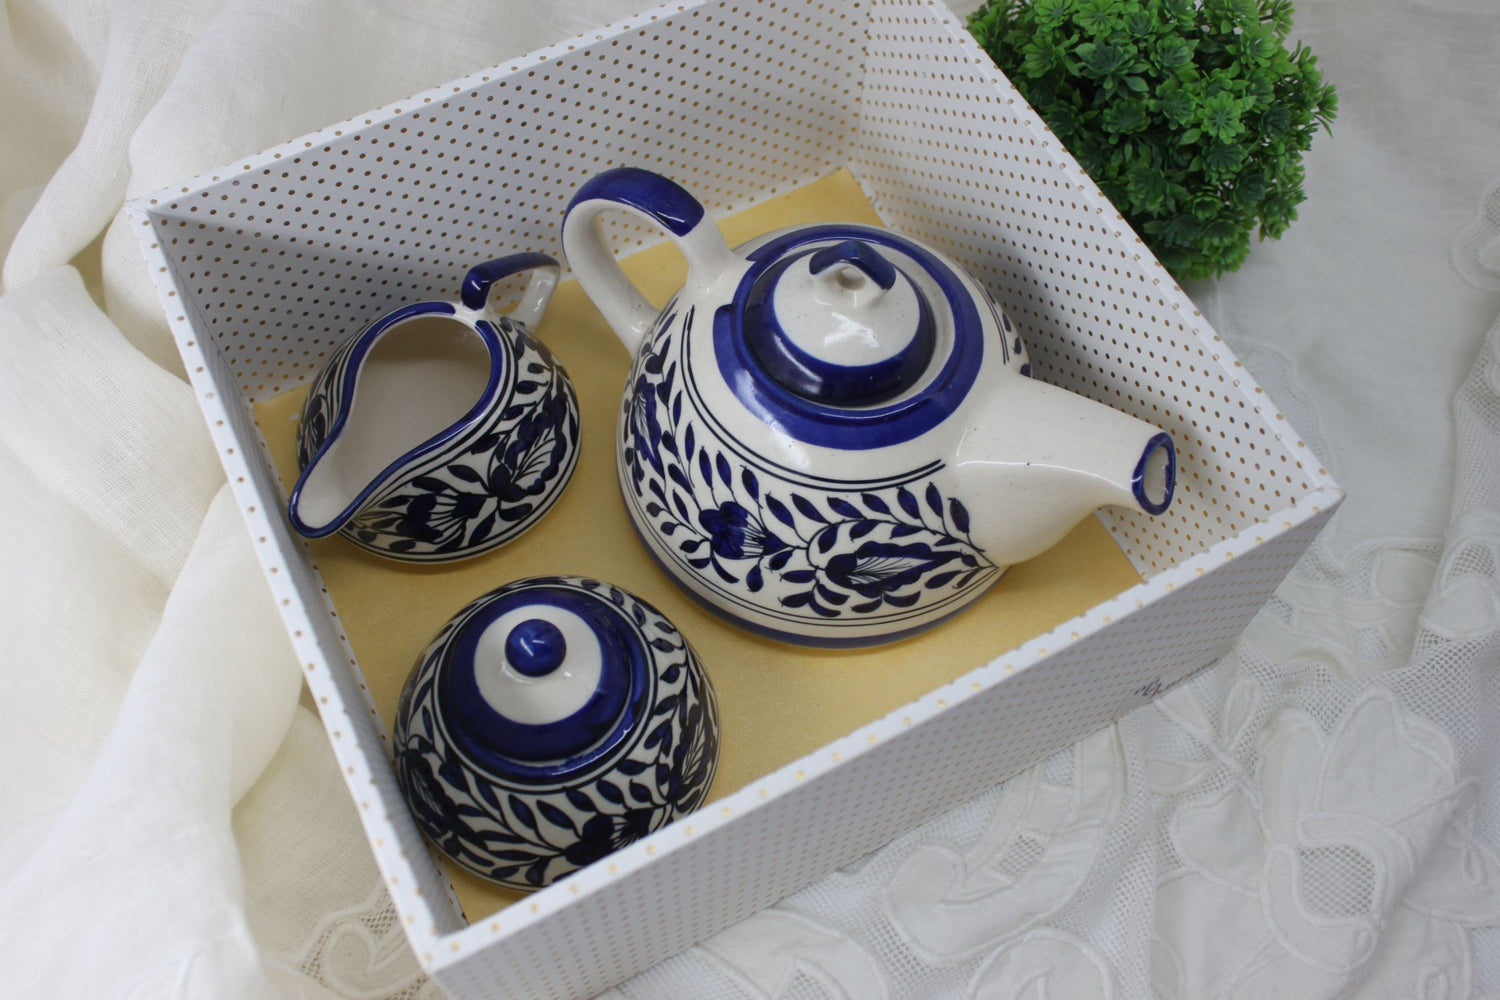 Rajwada Tea Set – Hand painted Ceramic